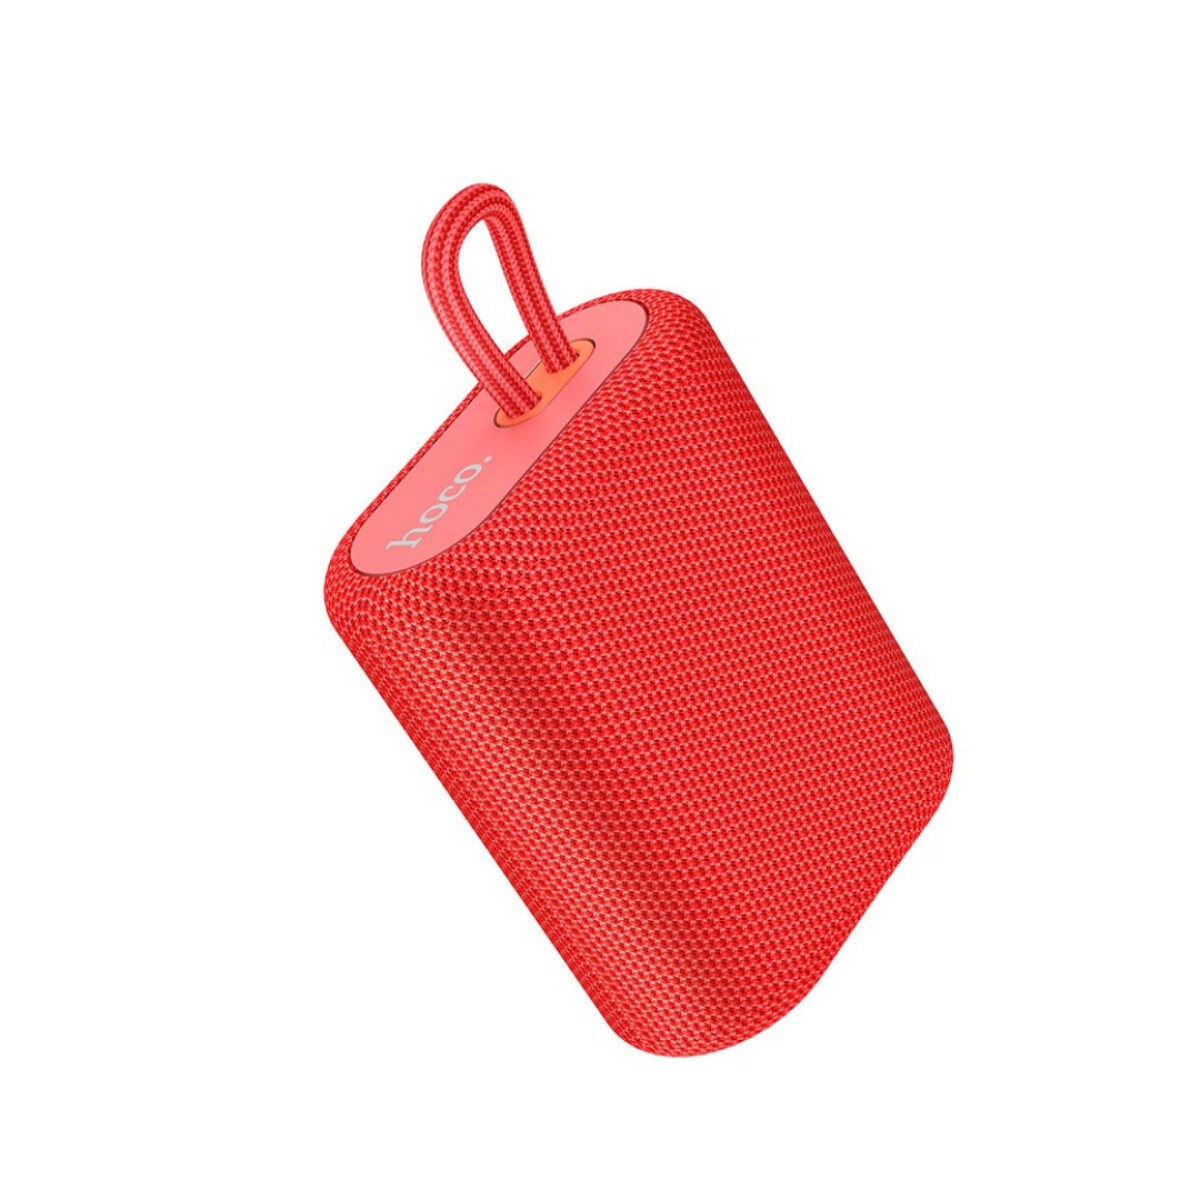 Parlante Portátil Bluetooth Inalámbrico Hoco Bs47 - Color rojo 